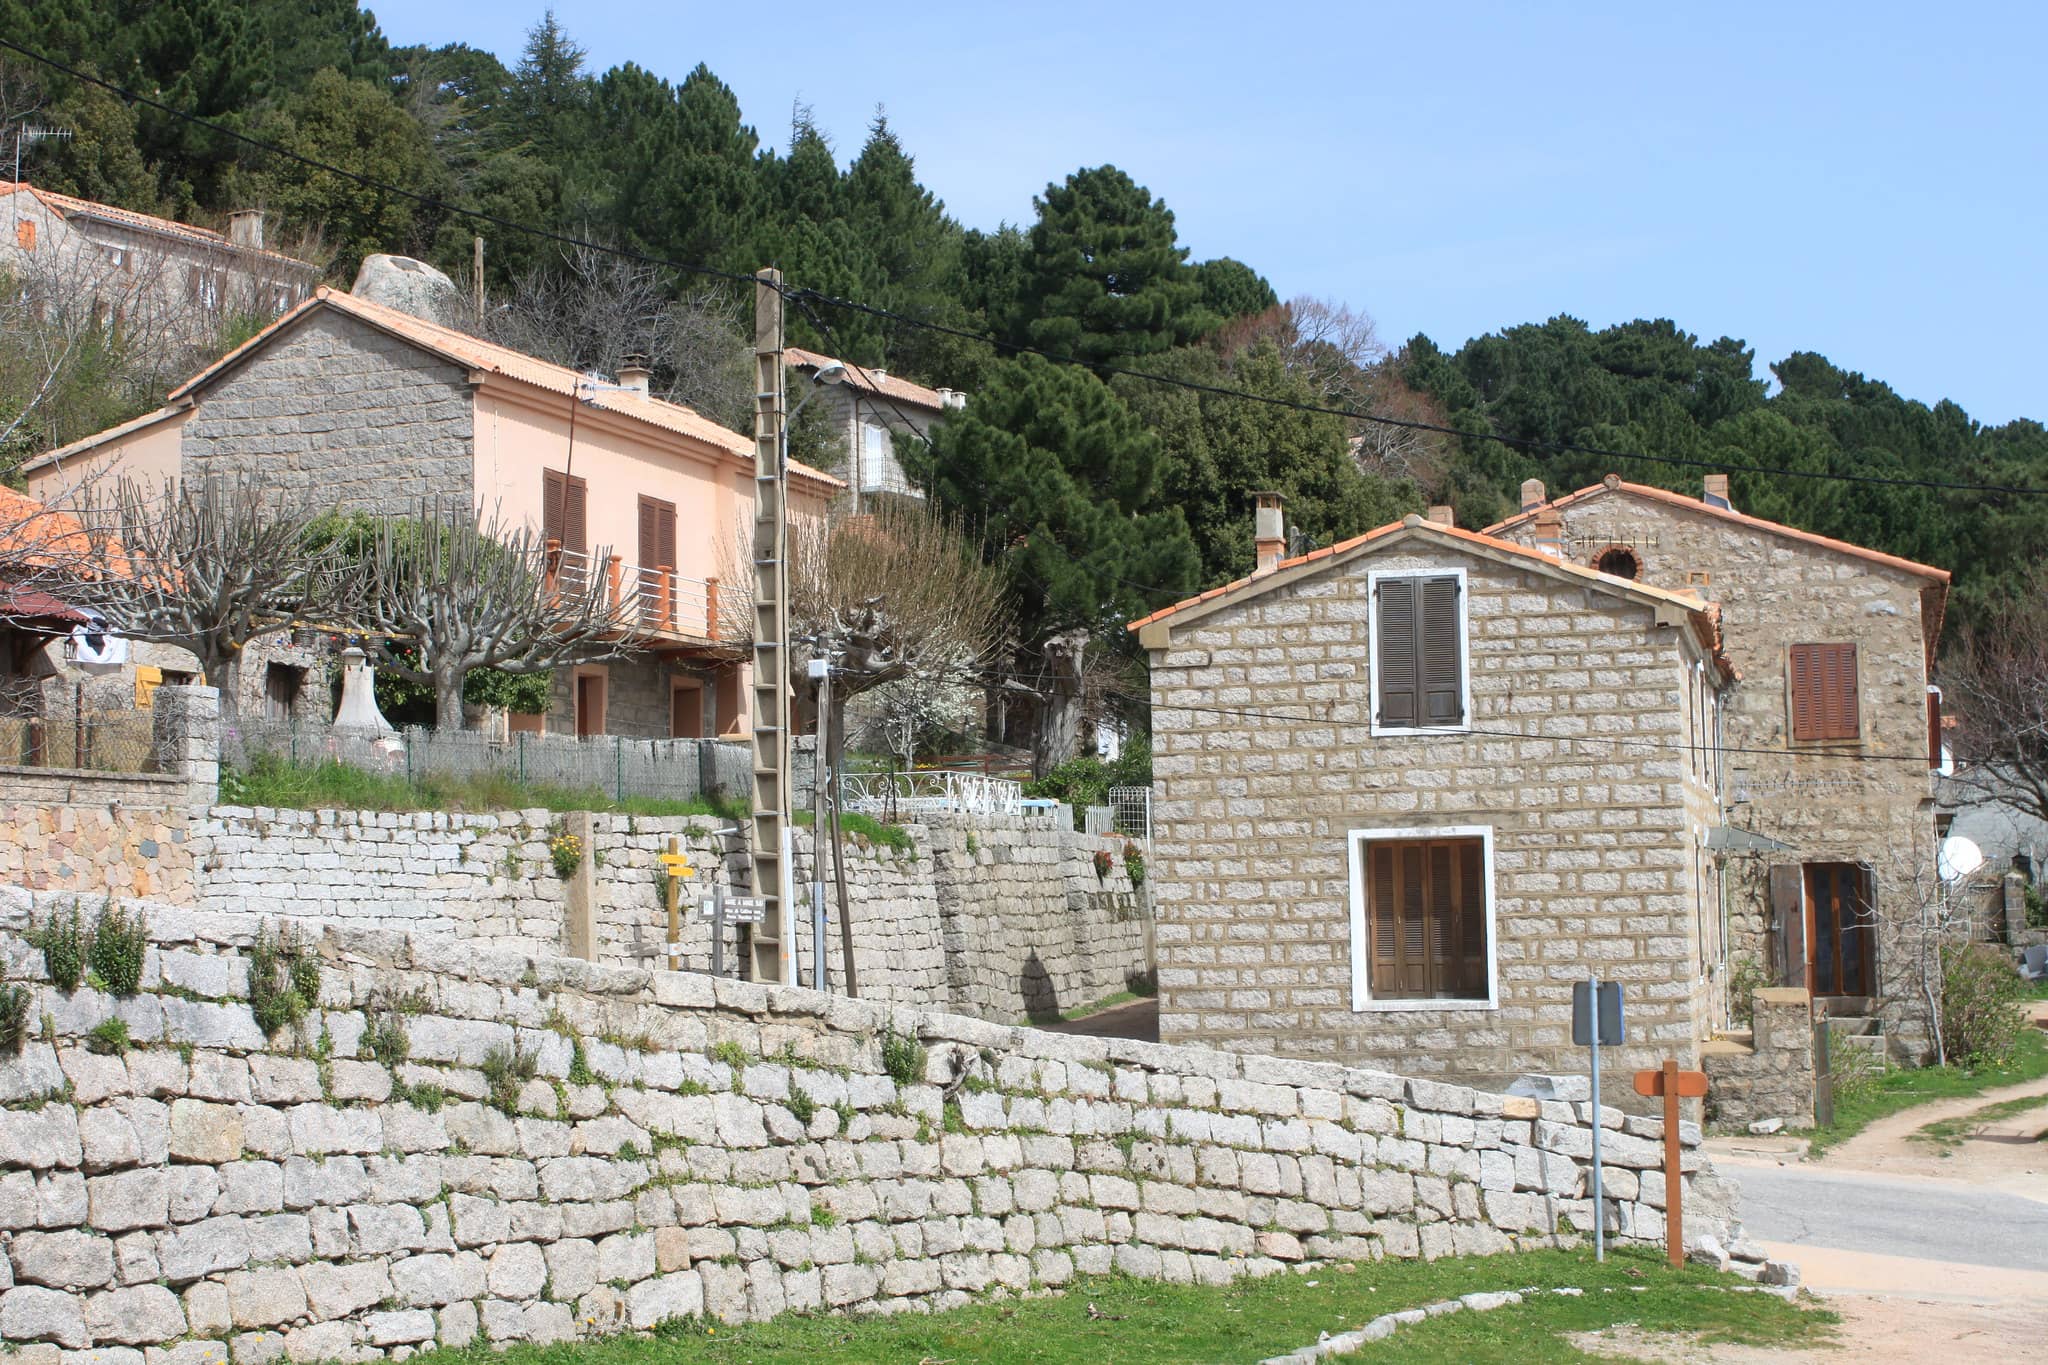 Paysage du village de l'Ospédale en Corse. Rue avec maisons en pierre. Présence d'arbres.